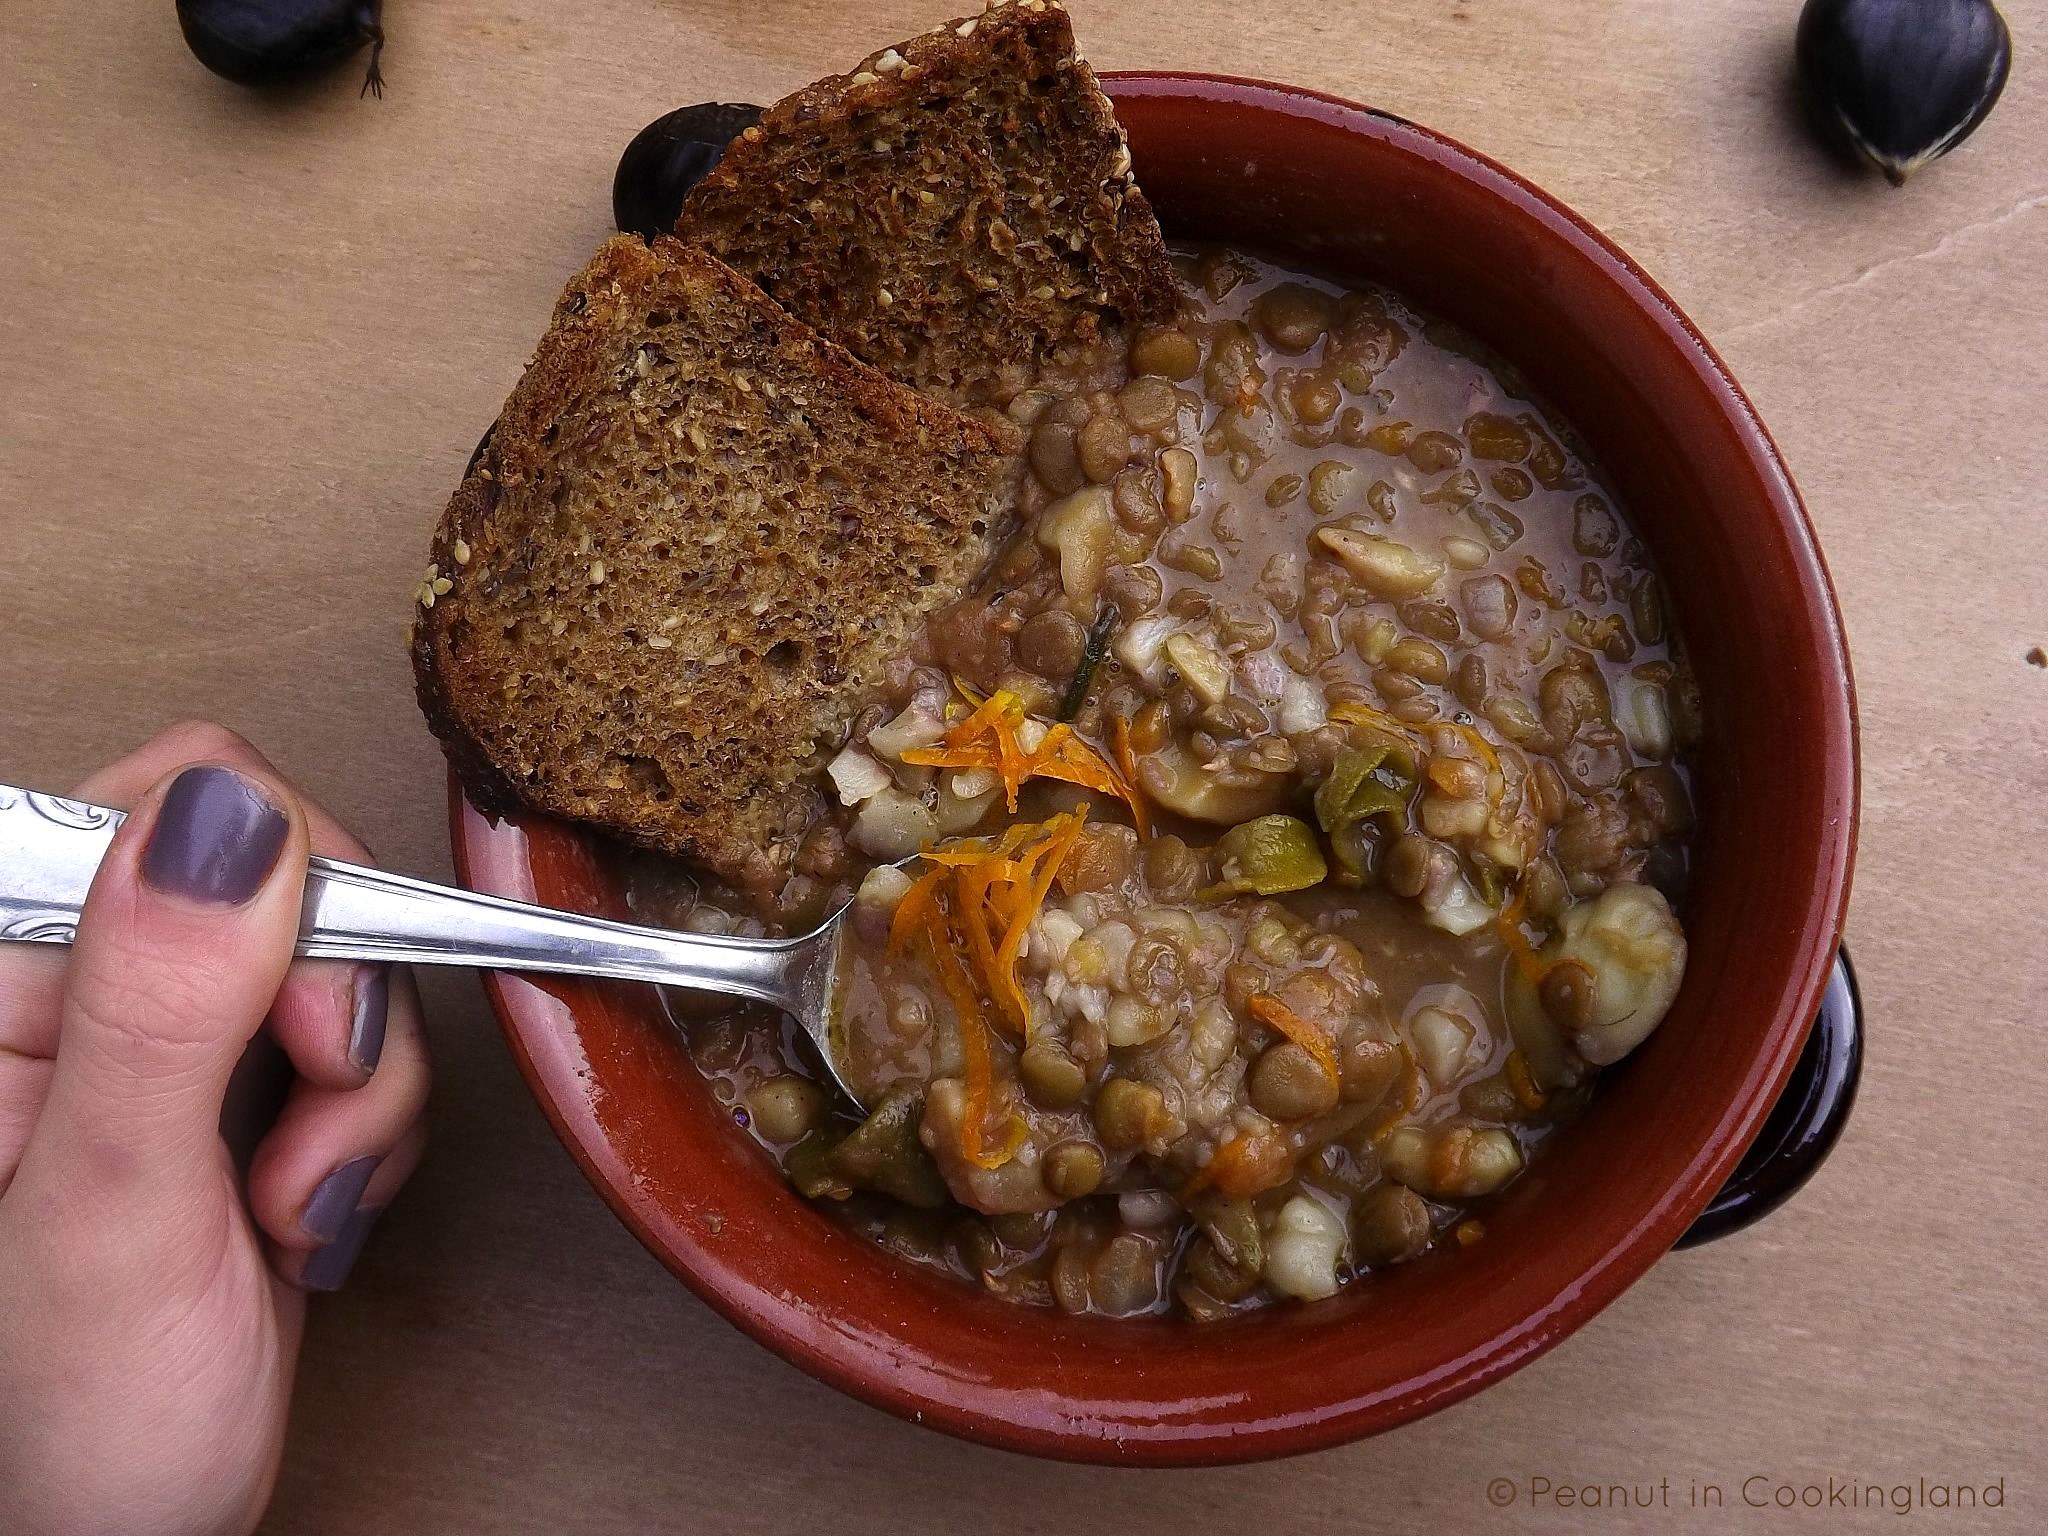 Lentil and chestnut soup with orange zest